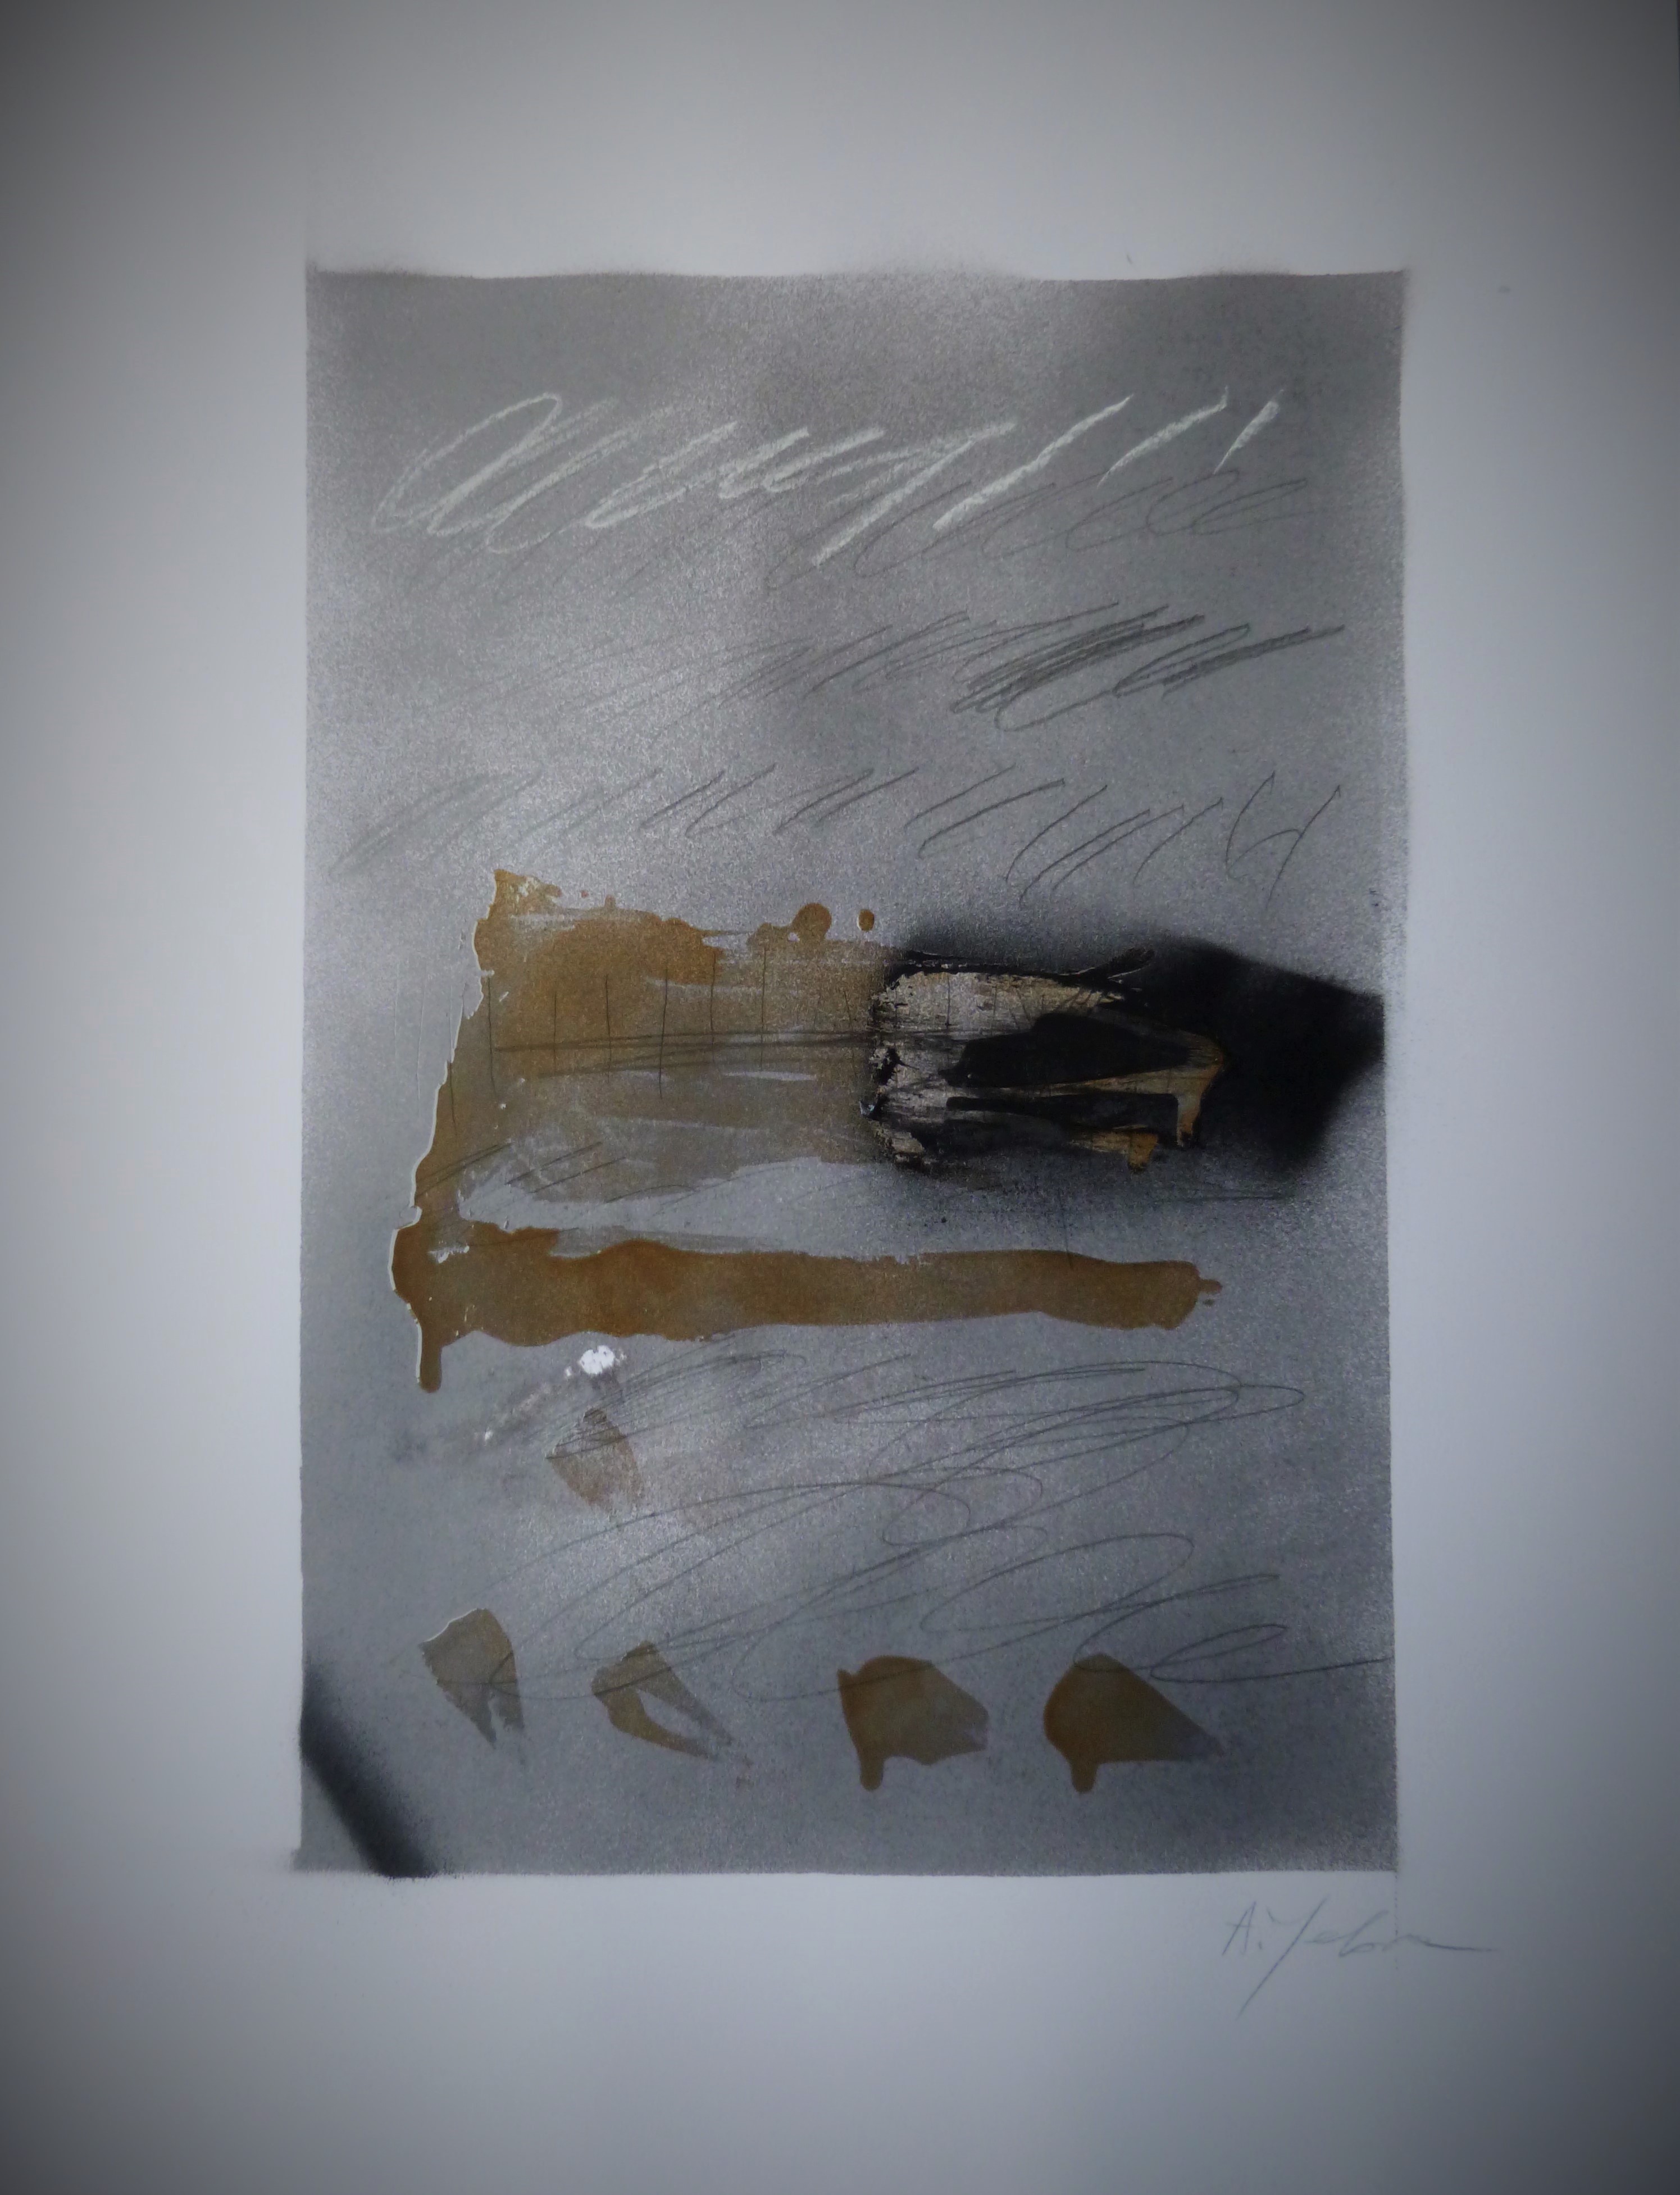 acrylique, vernis, aérosol et crayon sur papier, 21 x 30 cm, 2015